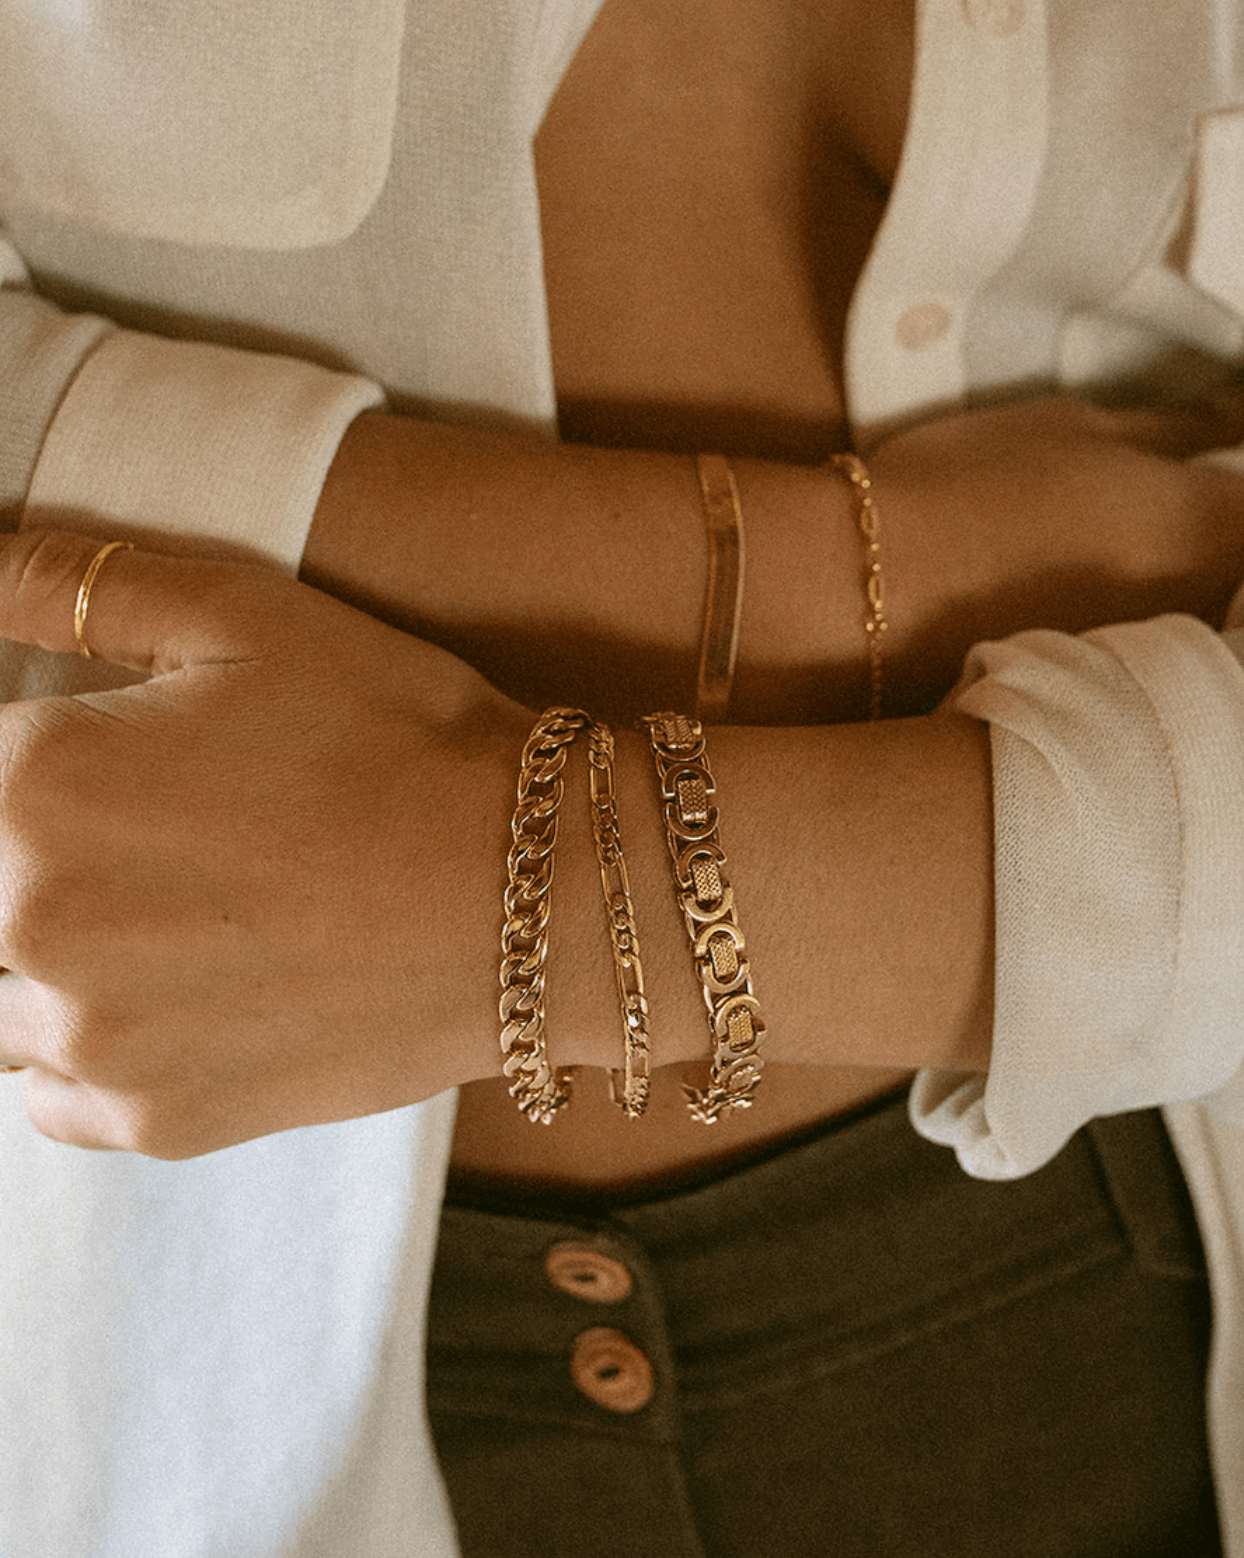 Asher Chain Bracelet (Gold)